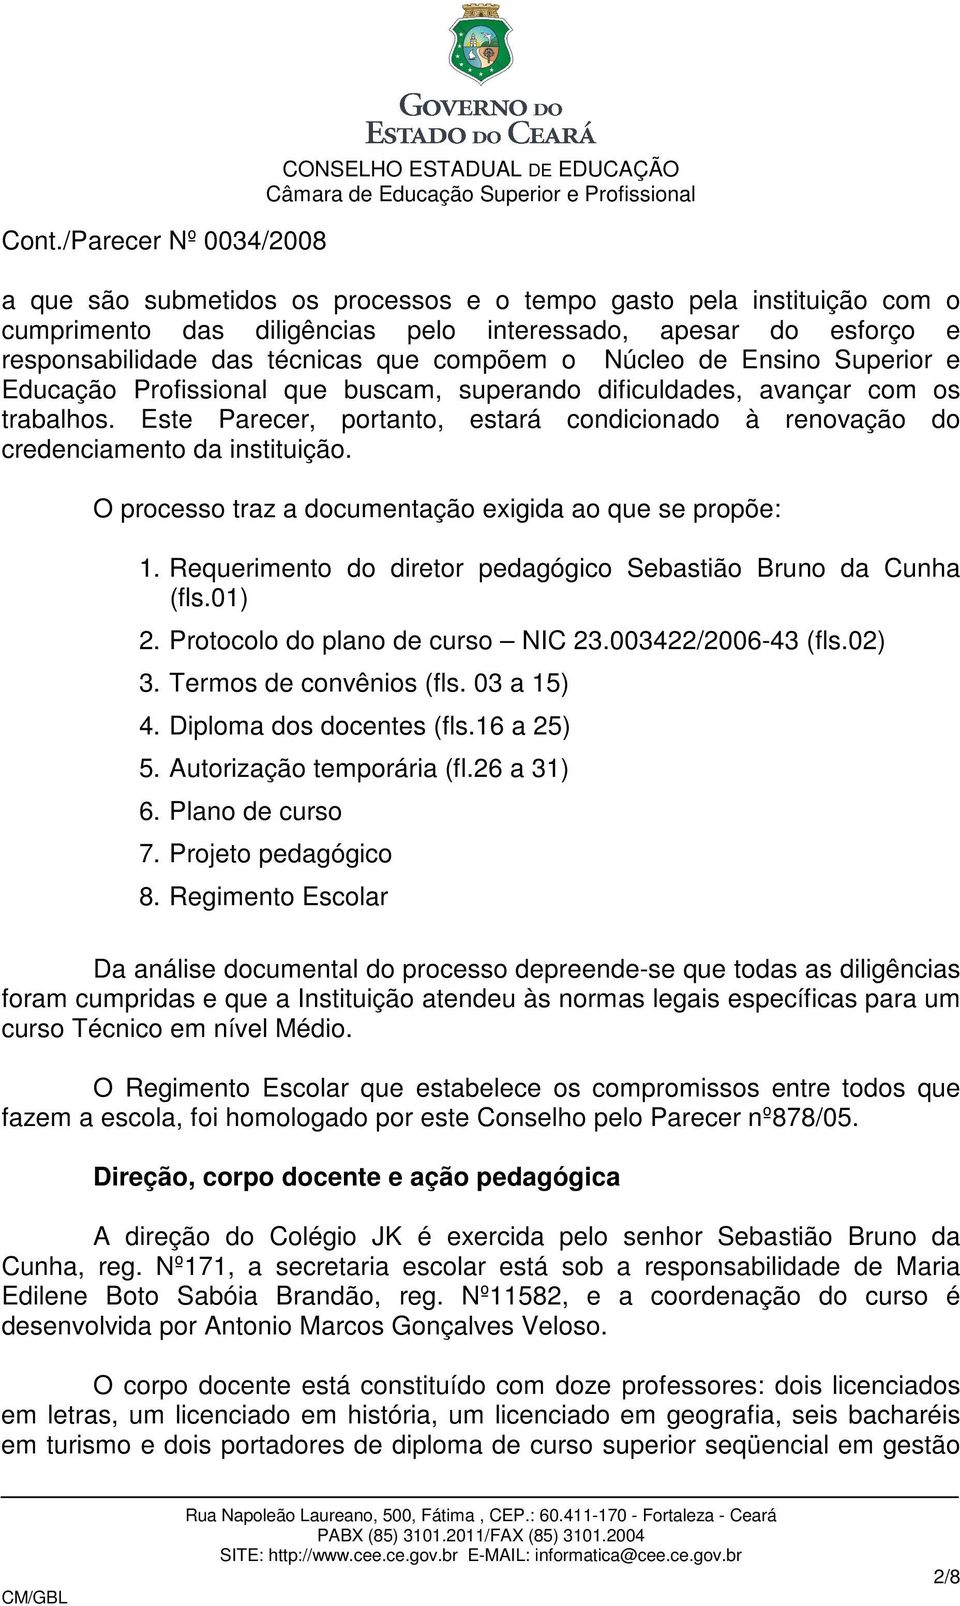 O processo traz a documentação exigida ao que se propõe: 1. Requerimento do diretor pedagógico Sebastião Bruno da Cunha (fls.01) 2. Protocolo do plano de curso NIC 23.003422/2006-43 (fls.02) 3.